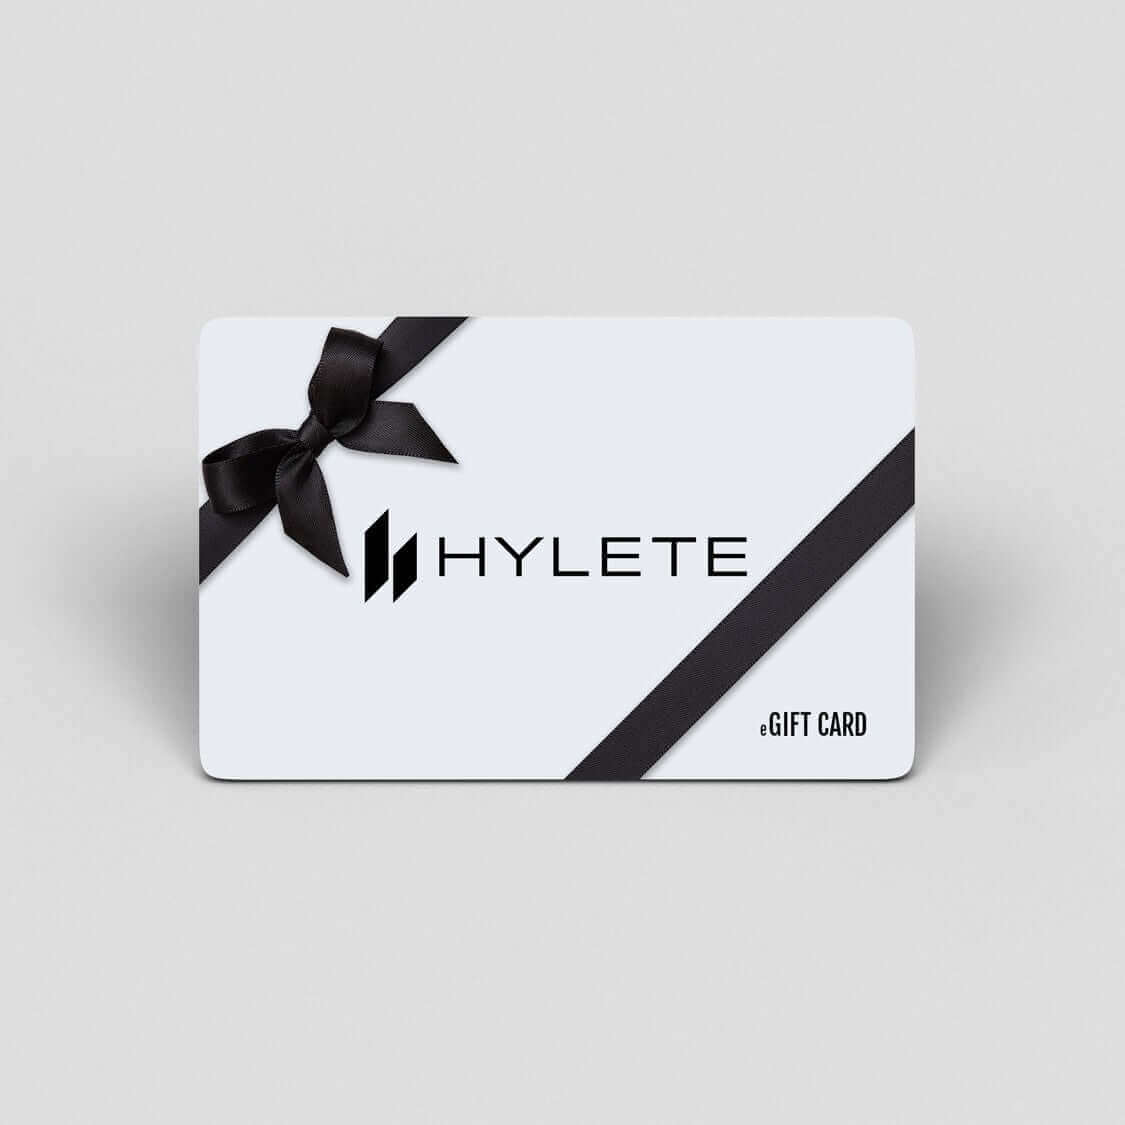 HYLETE Gift Card | HYLETE